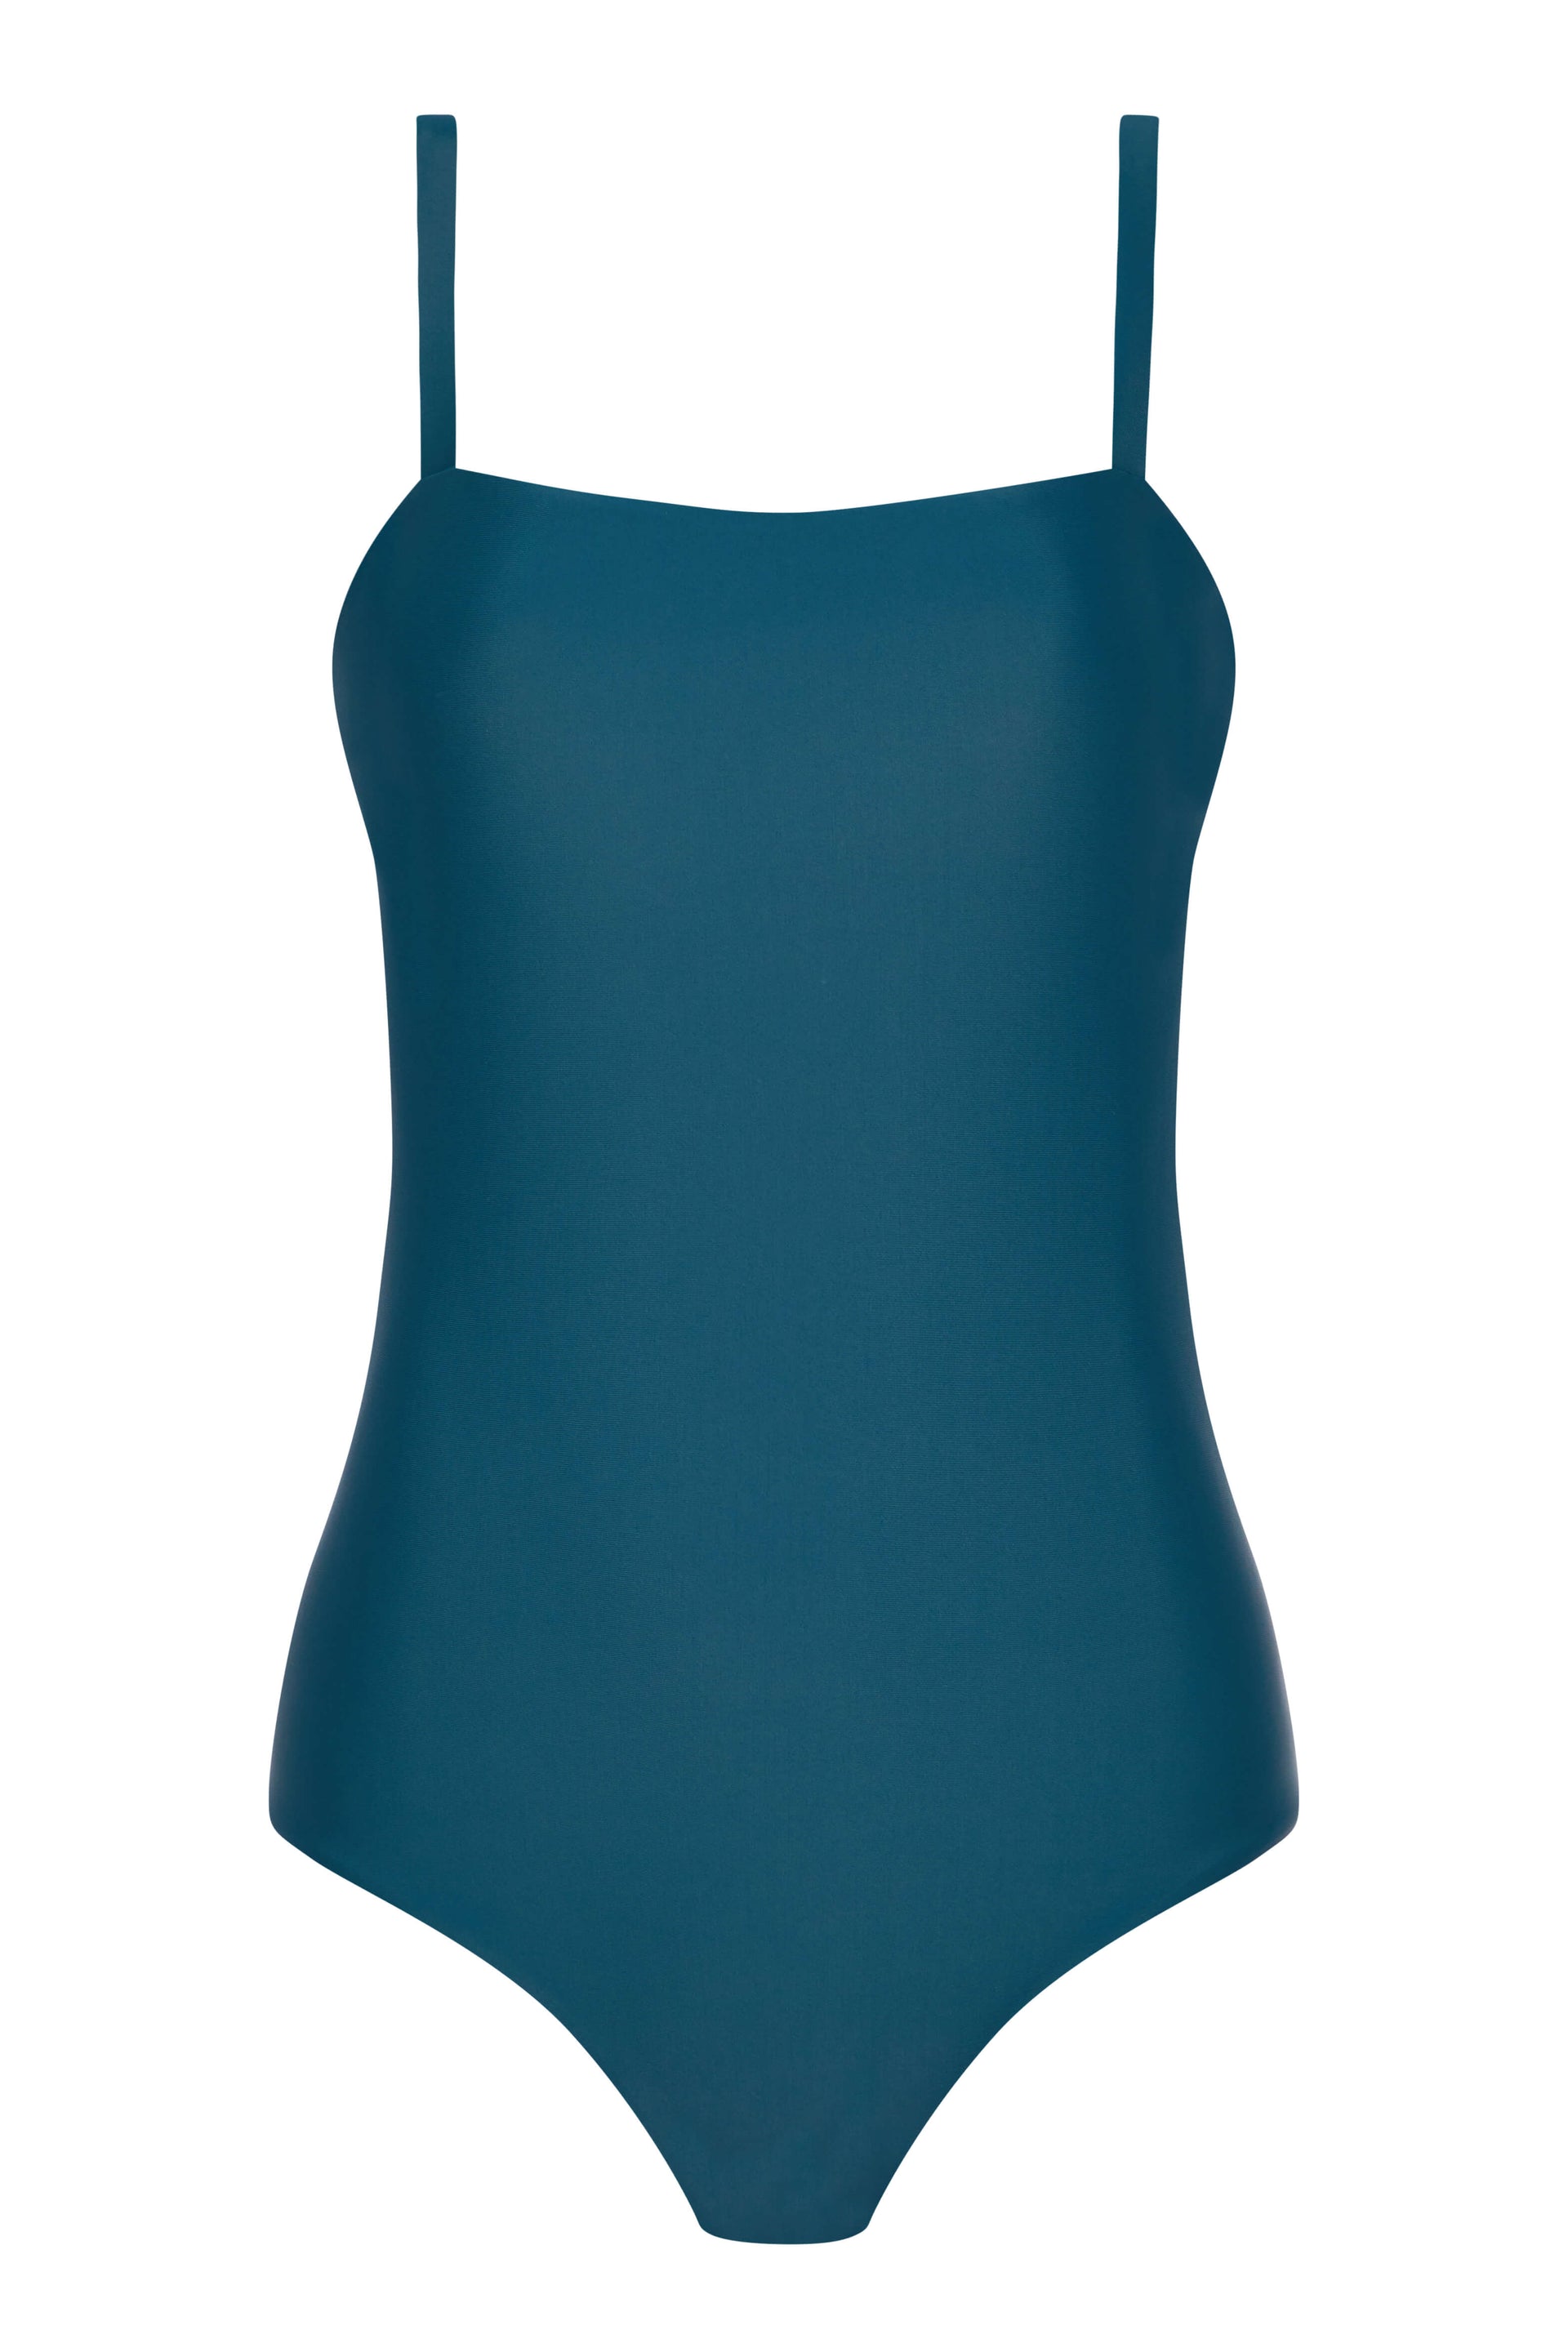 Palma Swimsuit Marine Blue Recycled Elastane